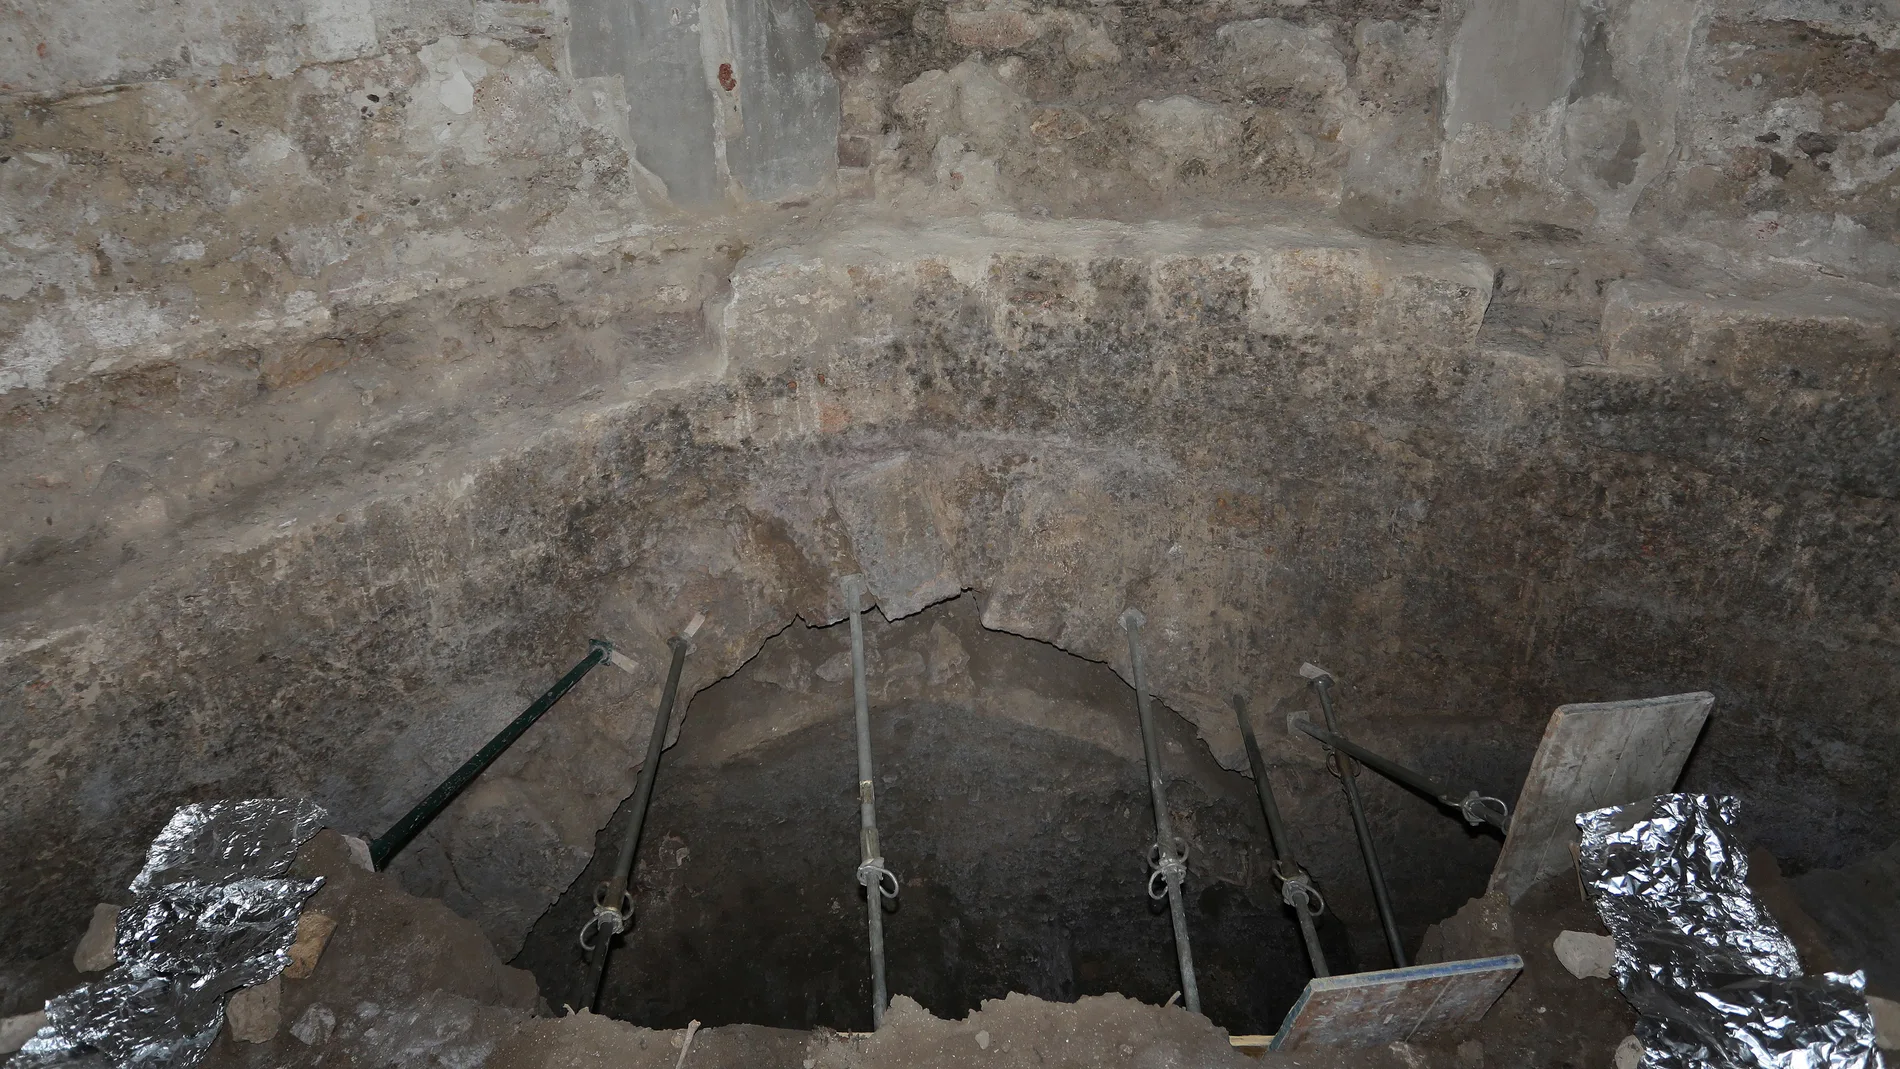 Hallan una cripta abovedada prerrománica bajo la capilla de San Isidro de la Catedral de Palencia